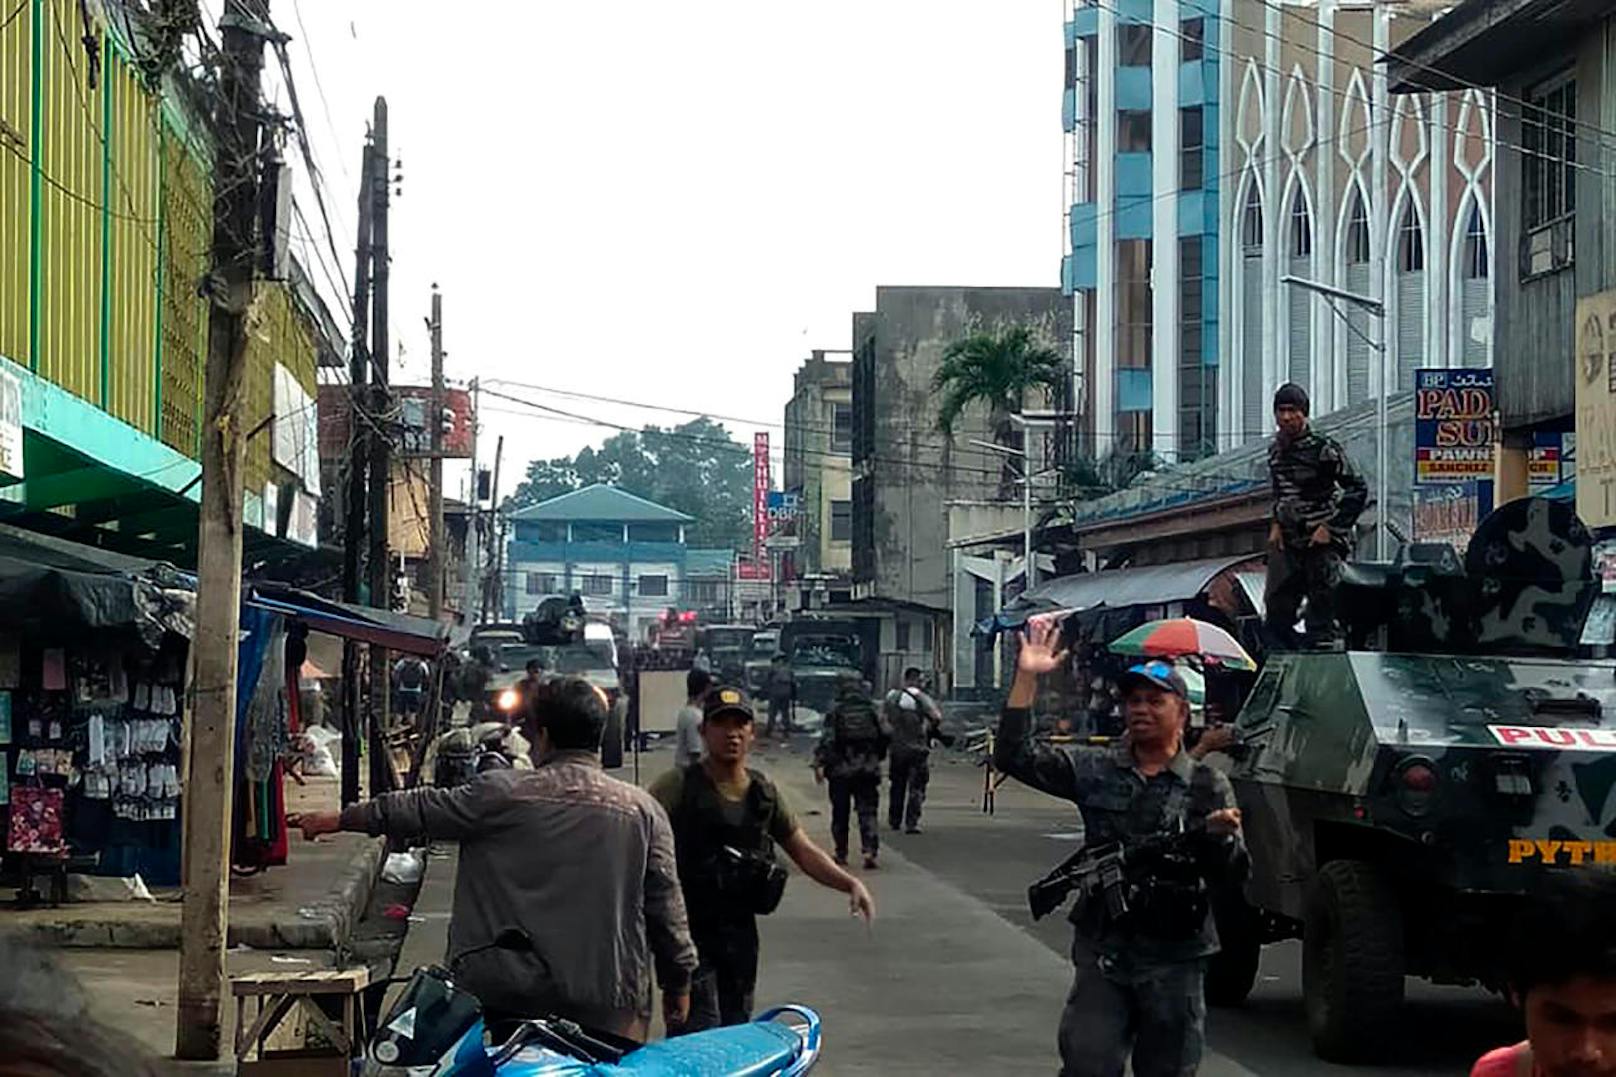 Bei einem Doppel-Anschlag auf eine katholische Kirche in der Stadt Jolo (Philippinen) sind am Sonntag, 27. Jänner 2019, während des Gottesdienstes mindestens 21 Menschen getötet worden. Weitere 71 Opfer wurden nach Angaben der Polizei verletzt.